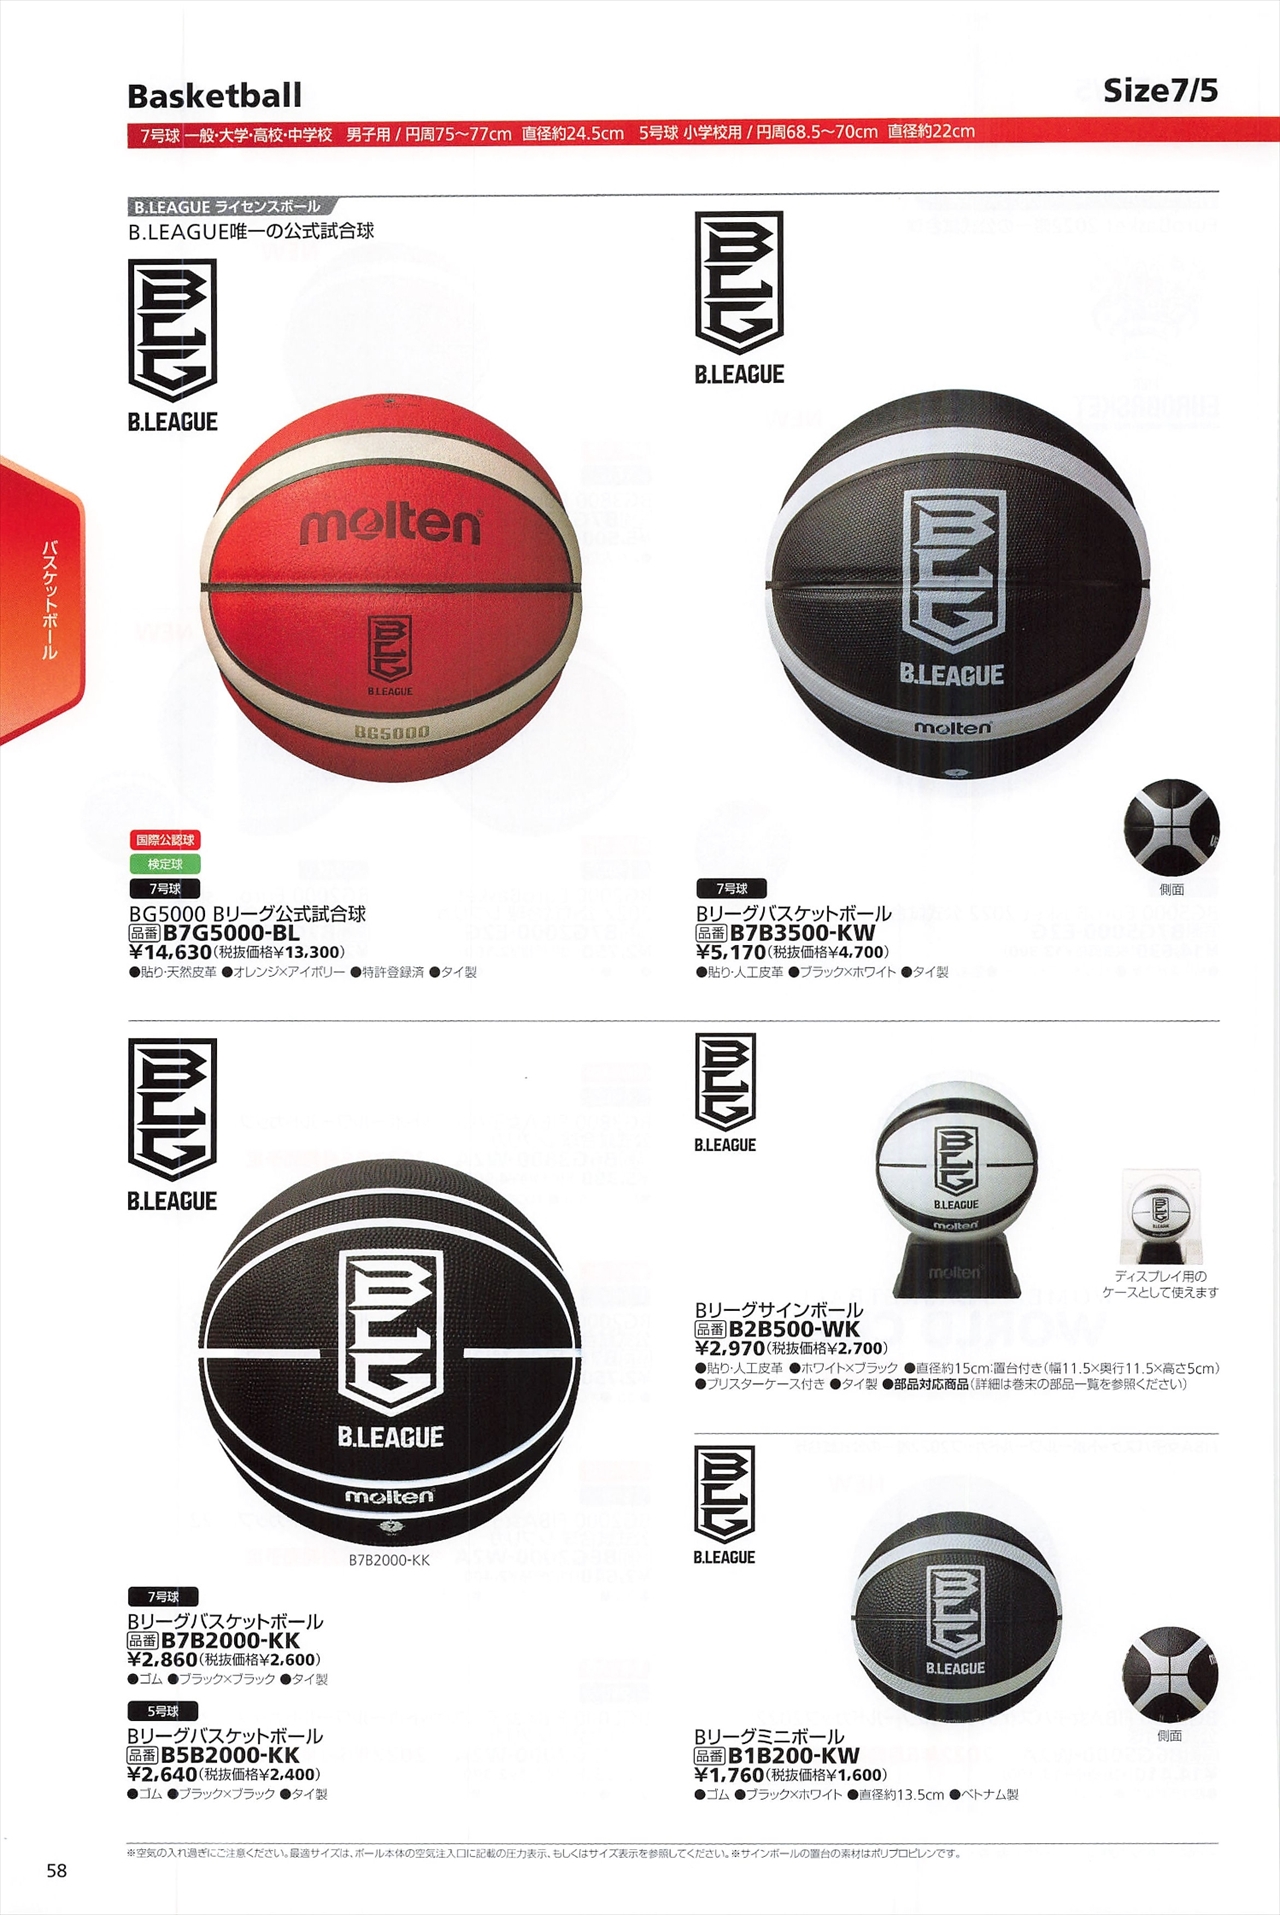 バスケットボールbリーグ関連ボールは モルテン22カタログ の ページ58 に掲載されています スポーツメーカーカタログ 目次ページ